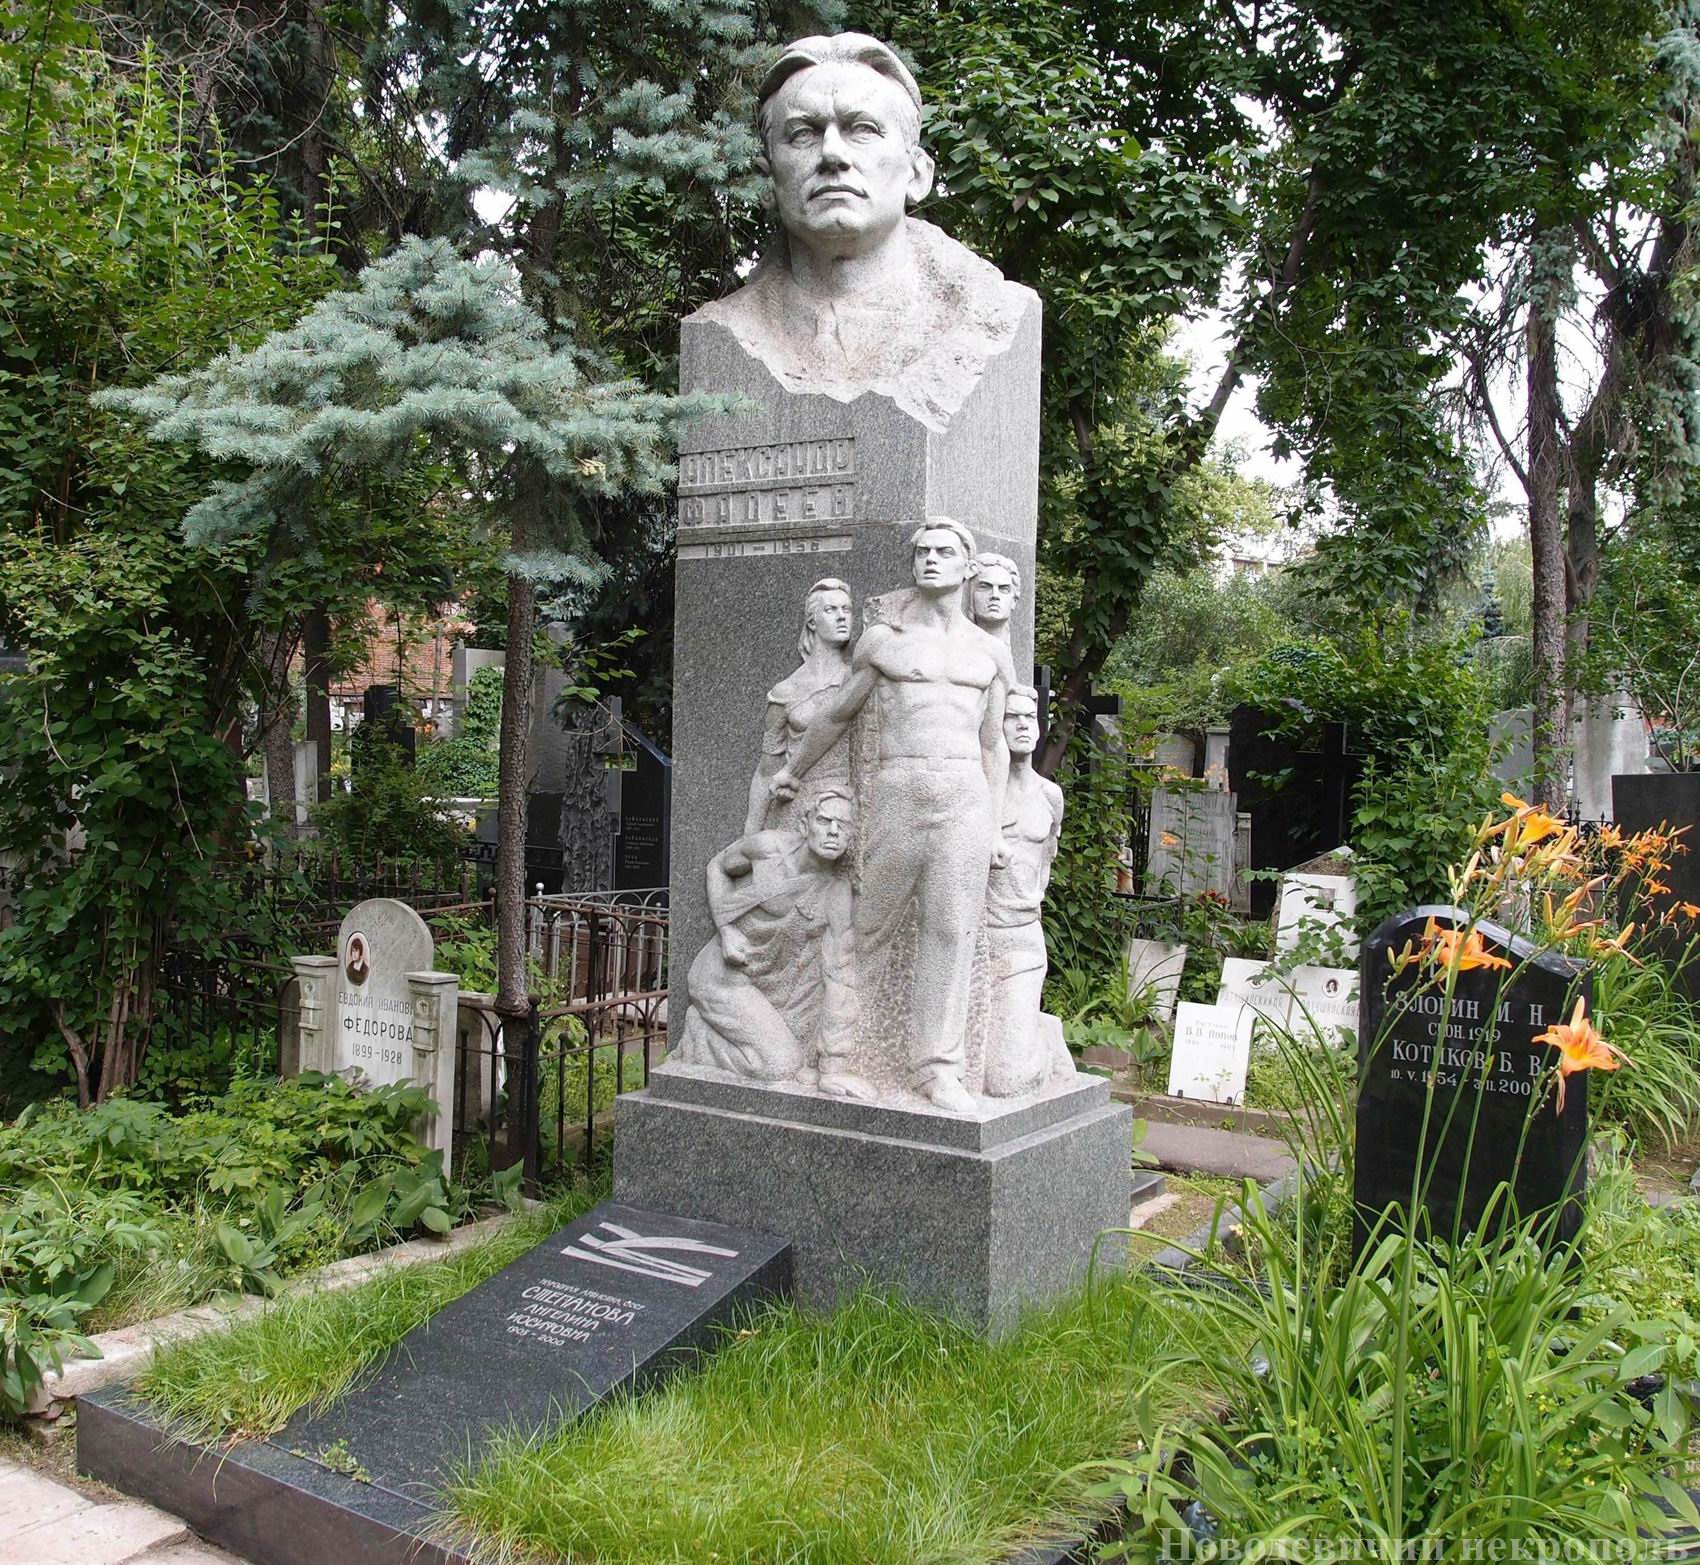 Памятник на могиле Фадеева А.А. (1901-1956), ск. Е.Рудаков, К.Биткин, арх. А.Котырев, на Новодевичьем кладбище (1-15-4). Нажмите левую кнопку мыши чтобы увидеть фрагмент памятника.